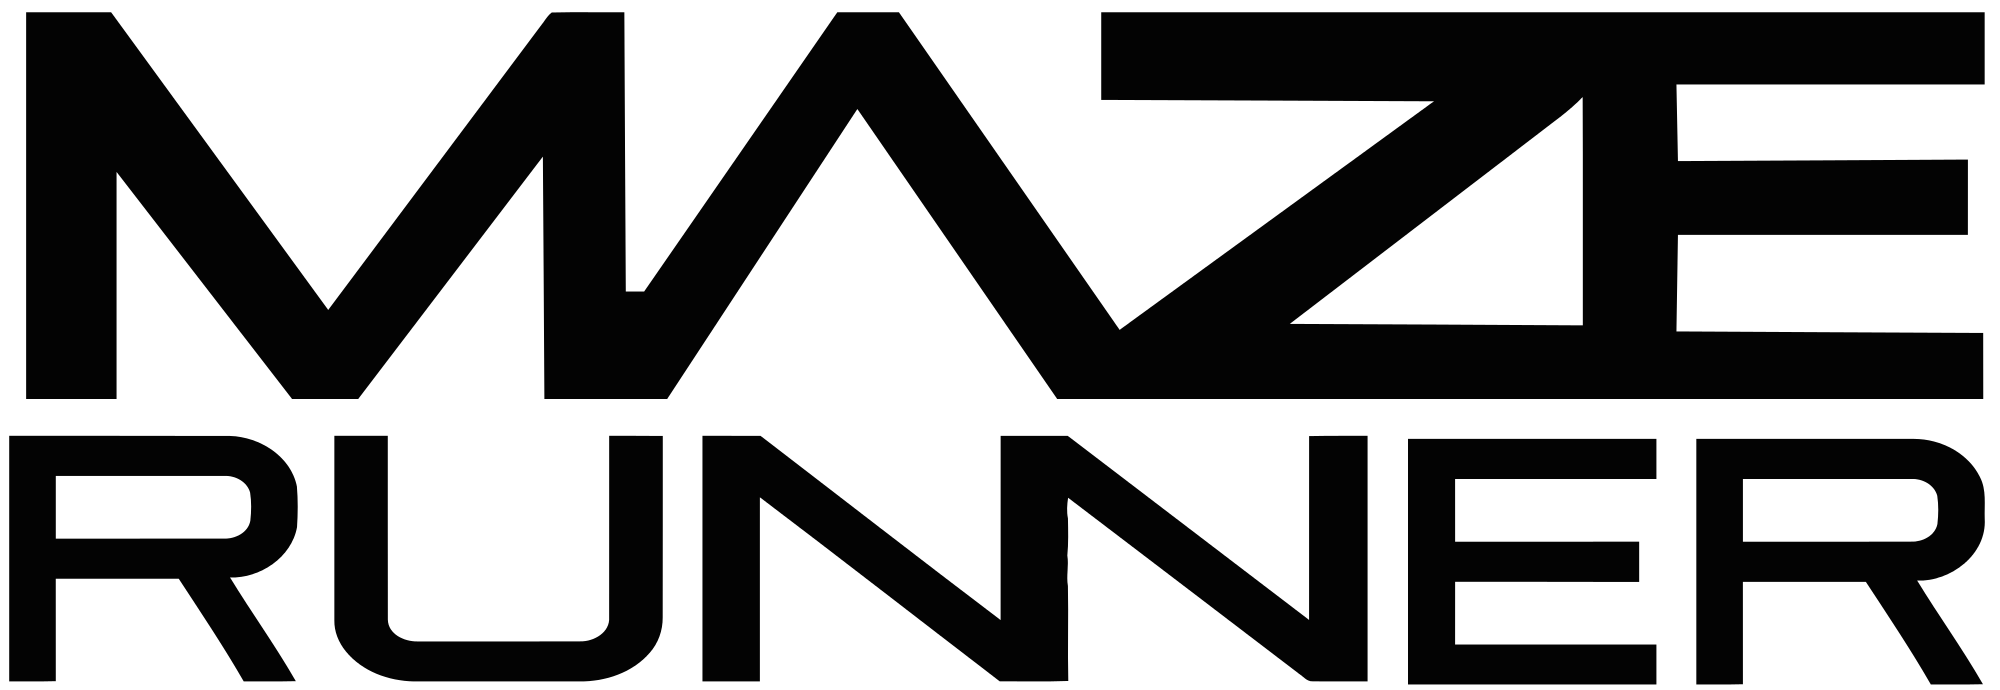 Maze Runner Logo - File:Maze Runner Logo.svg - Wikimedia Commons